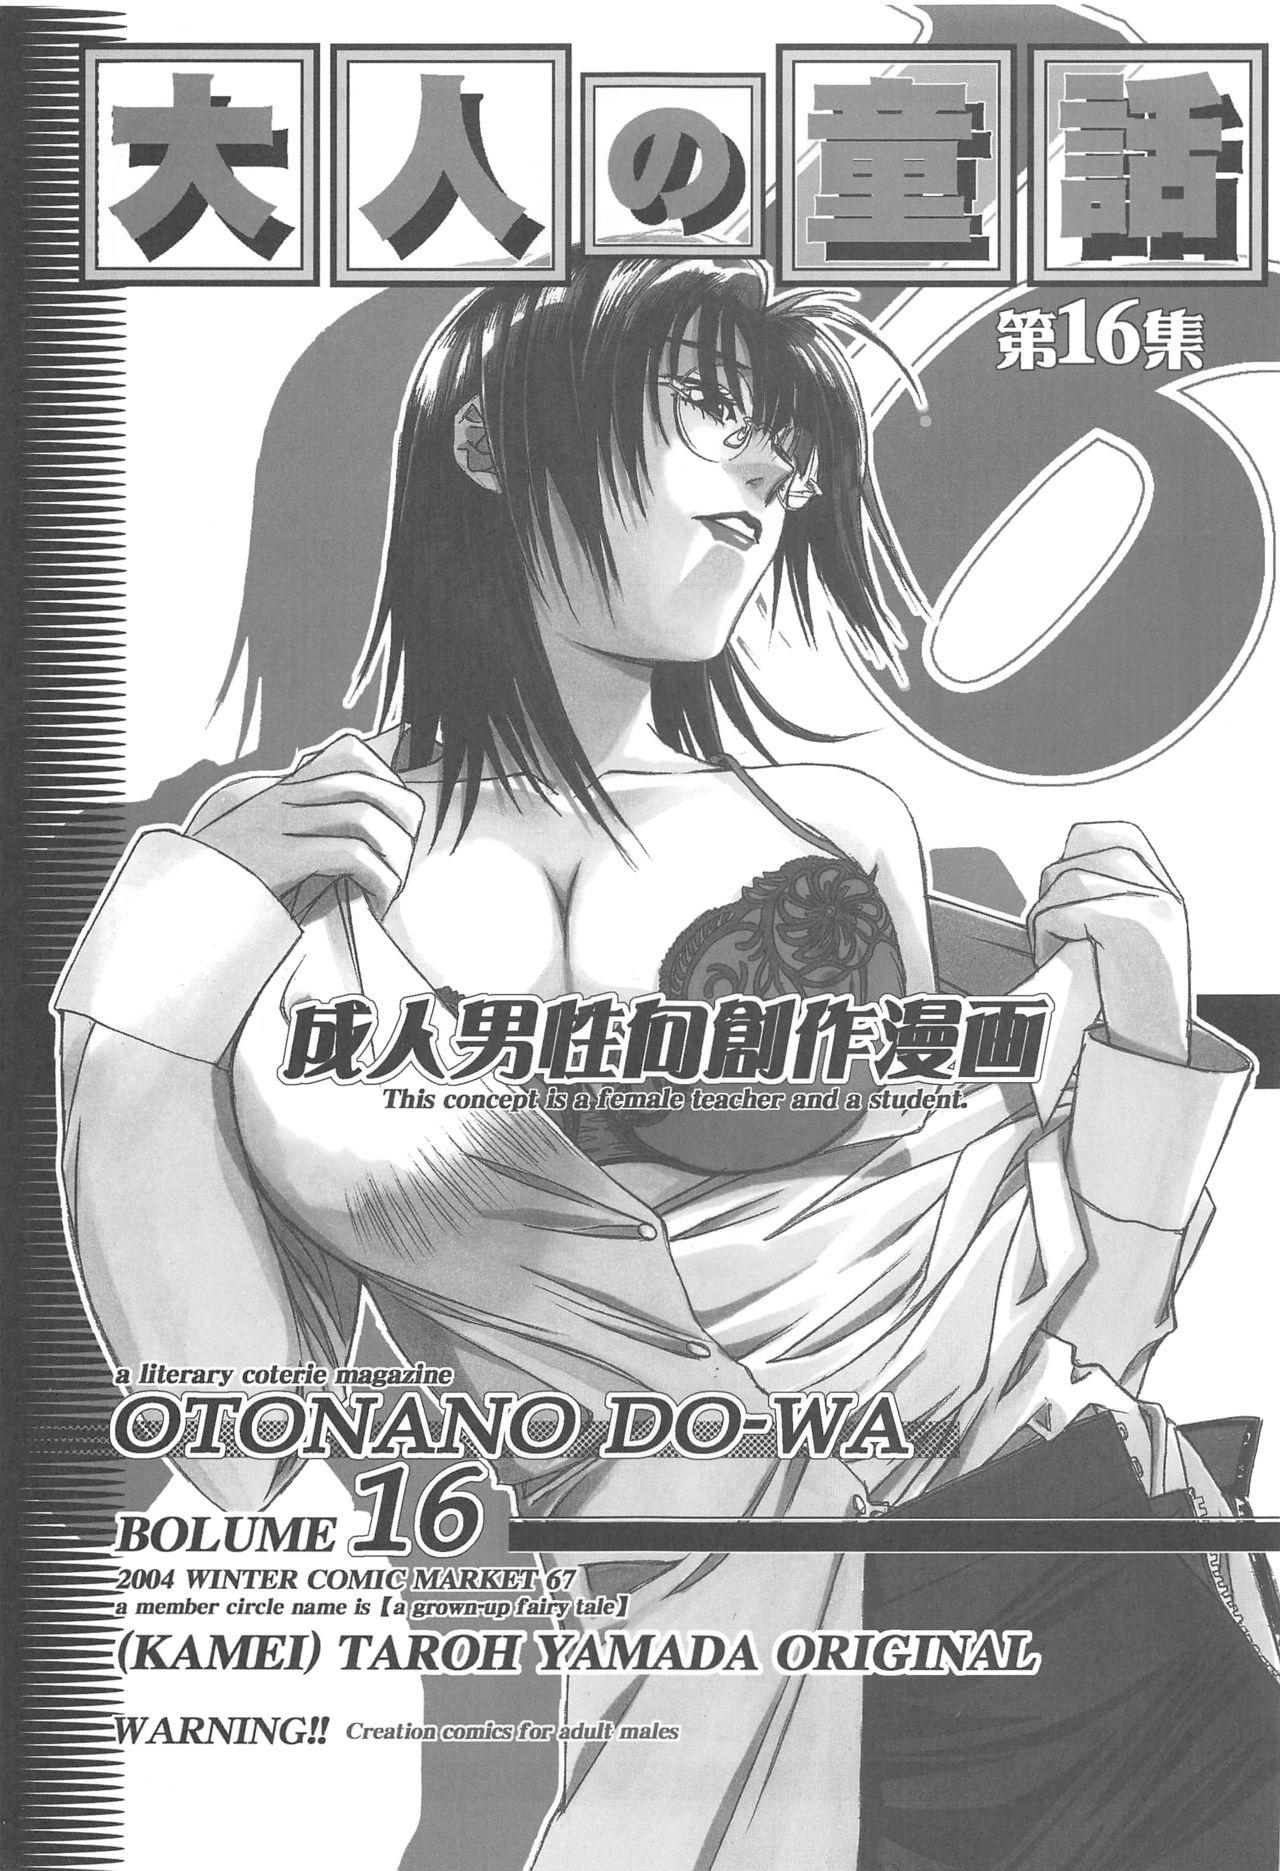 Otonano Do-wa Vol. 16 1